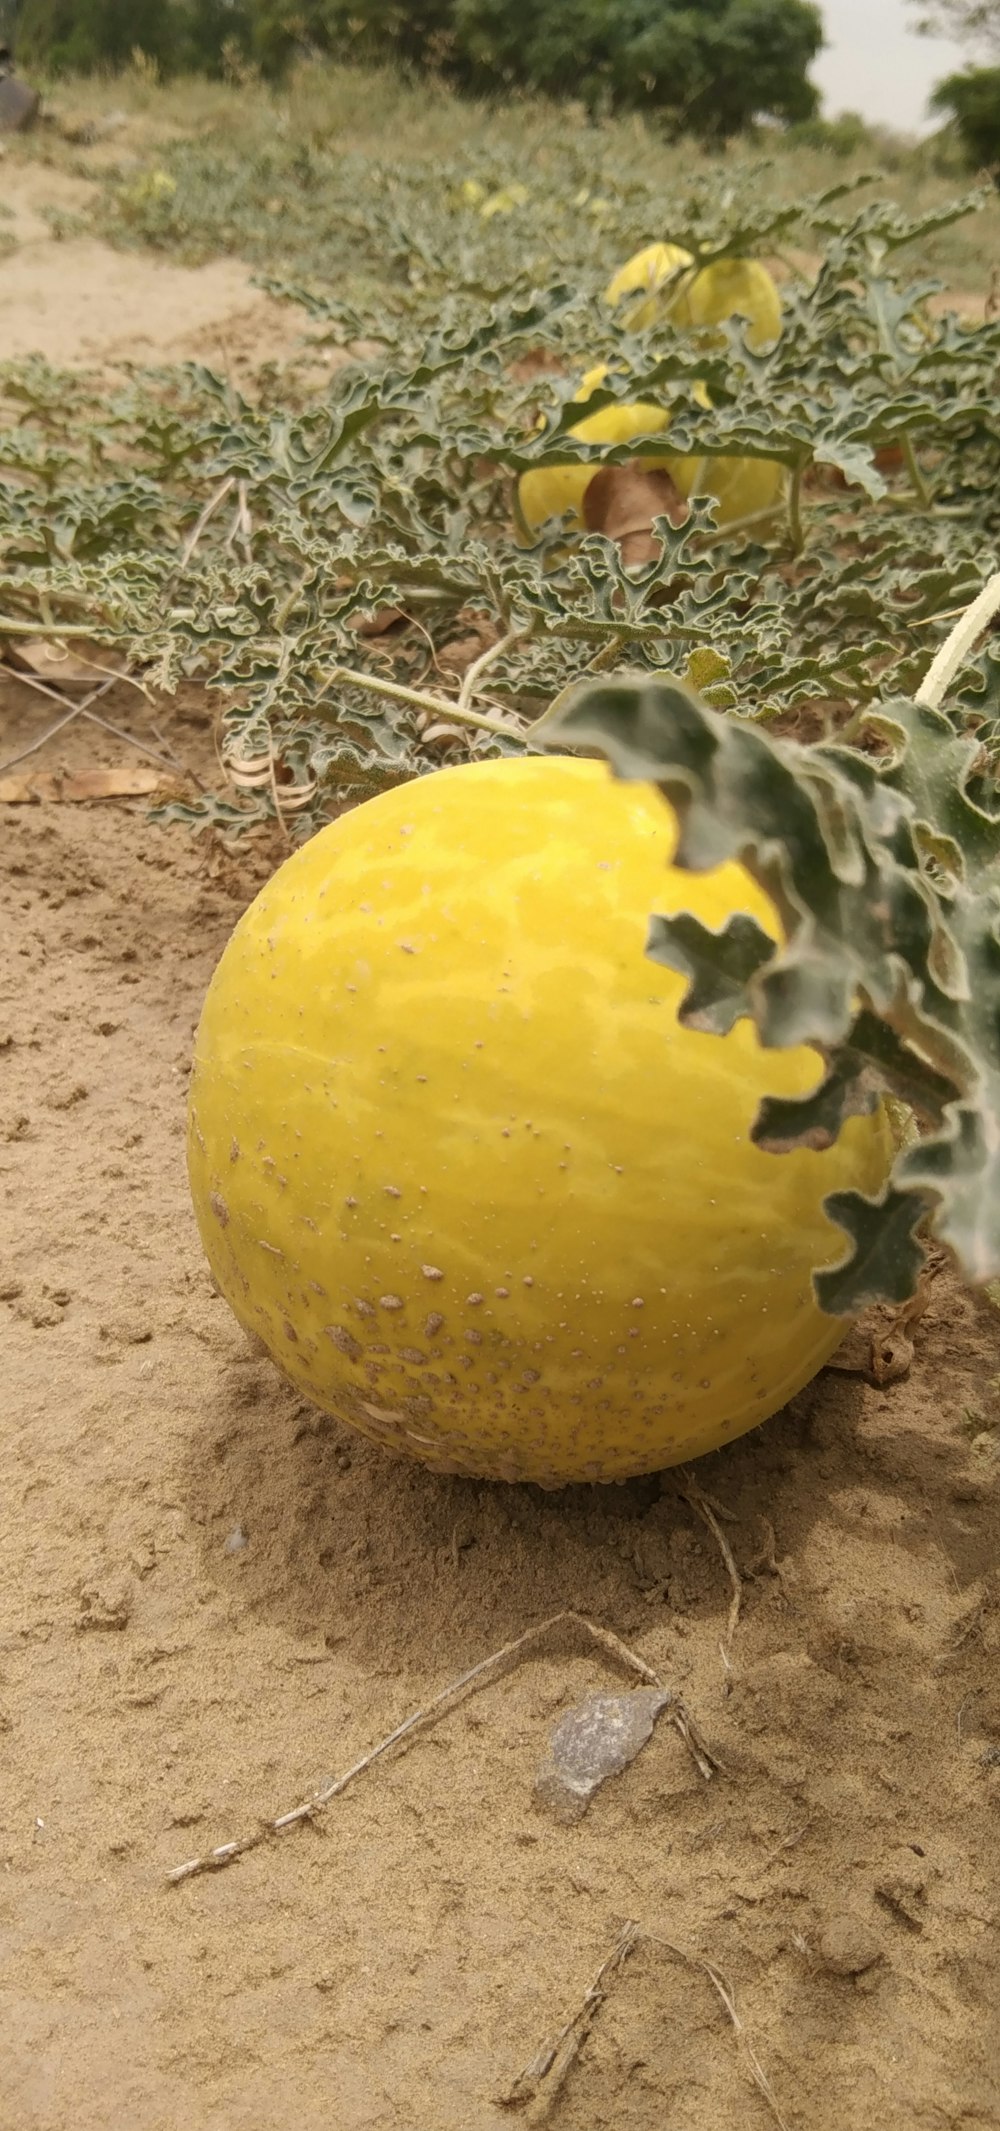 地面の黄色い果物